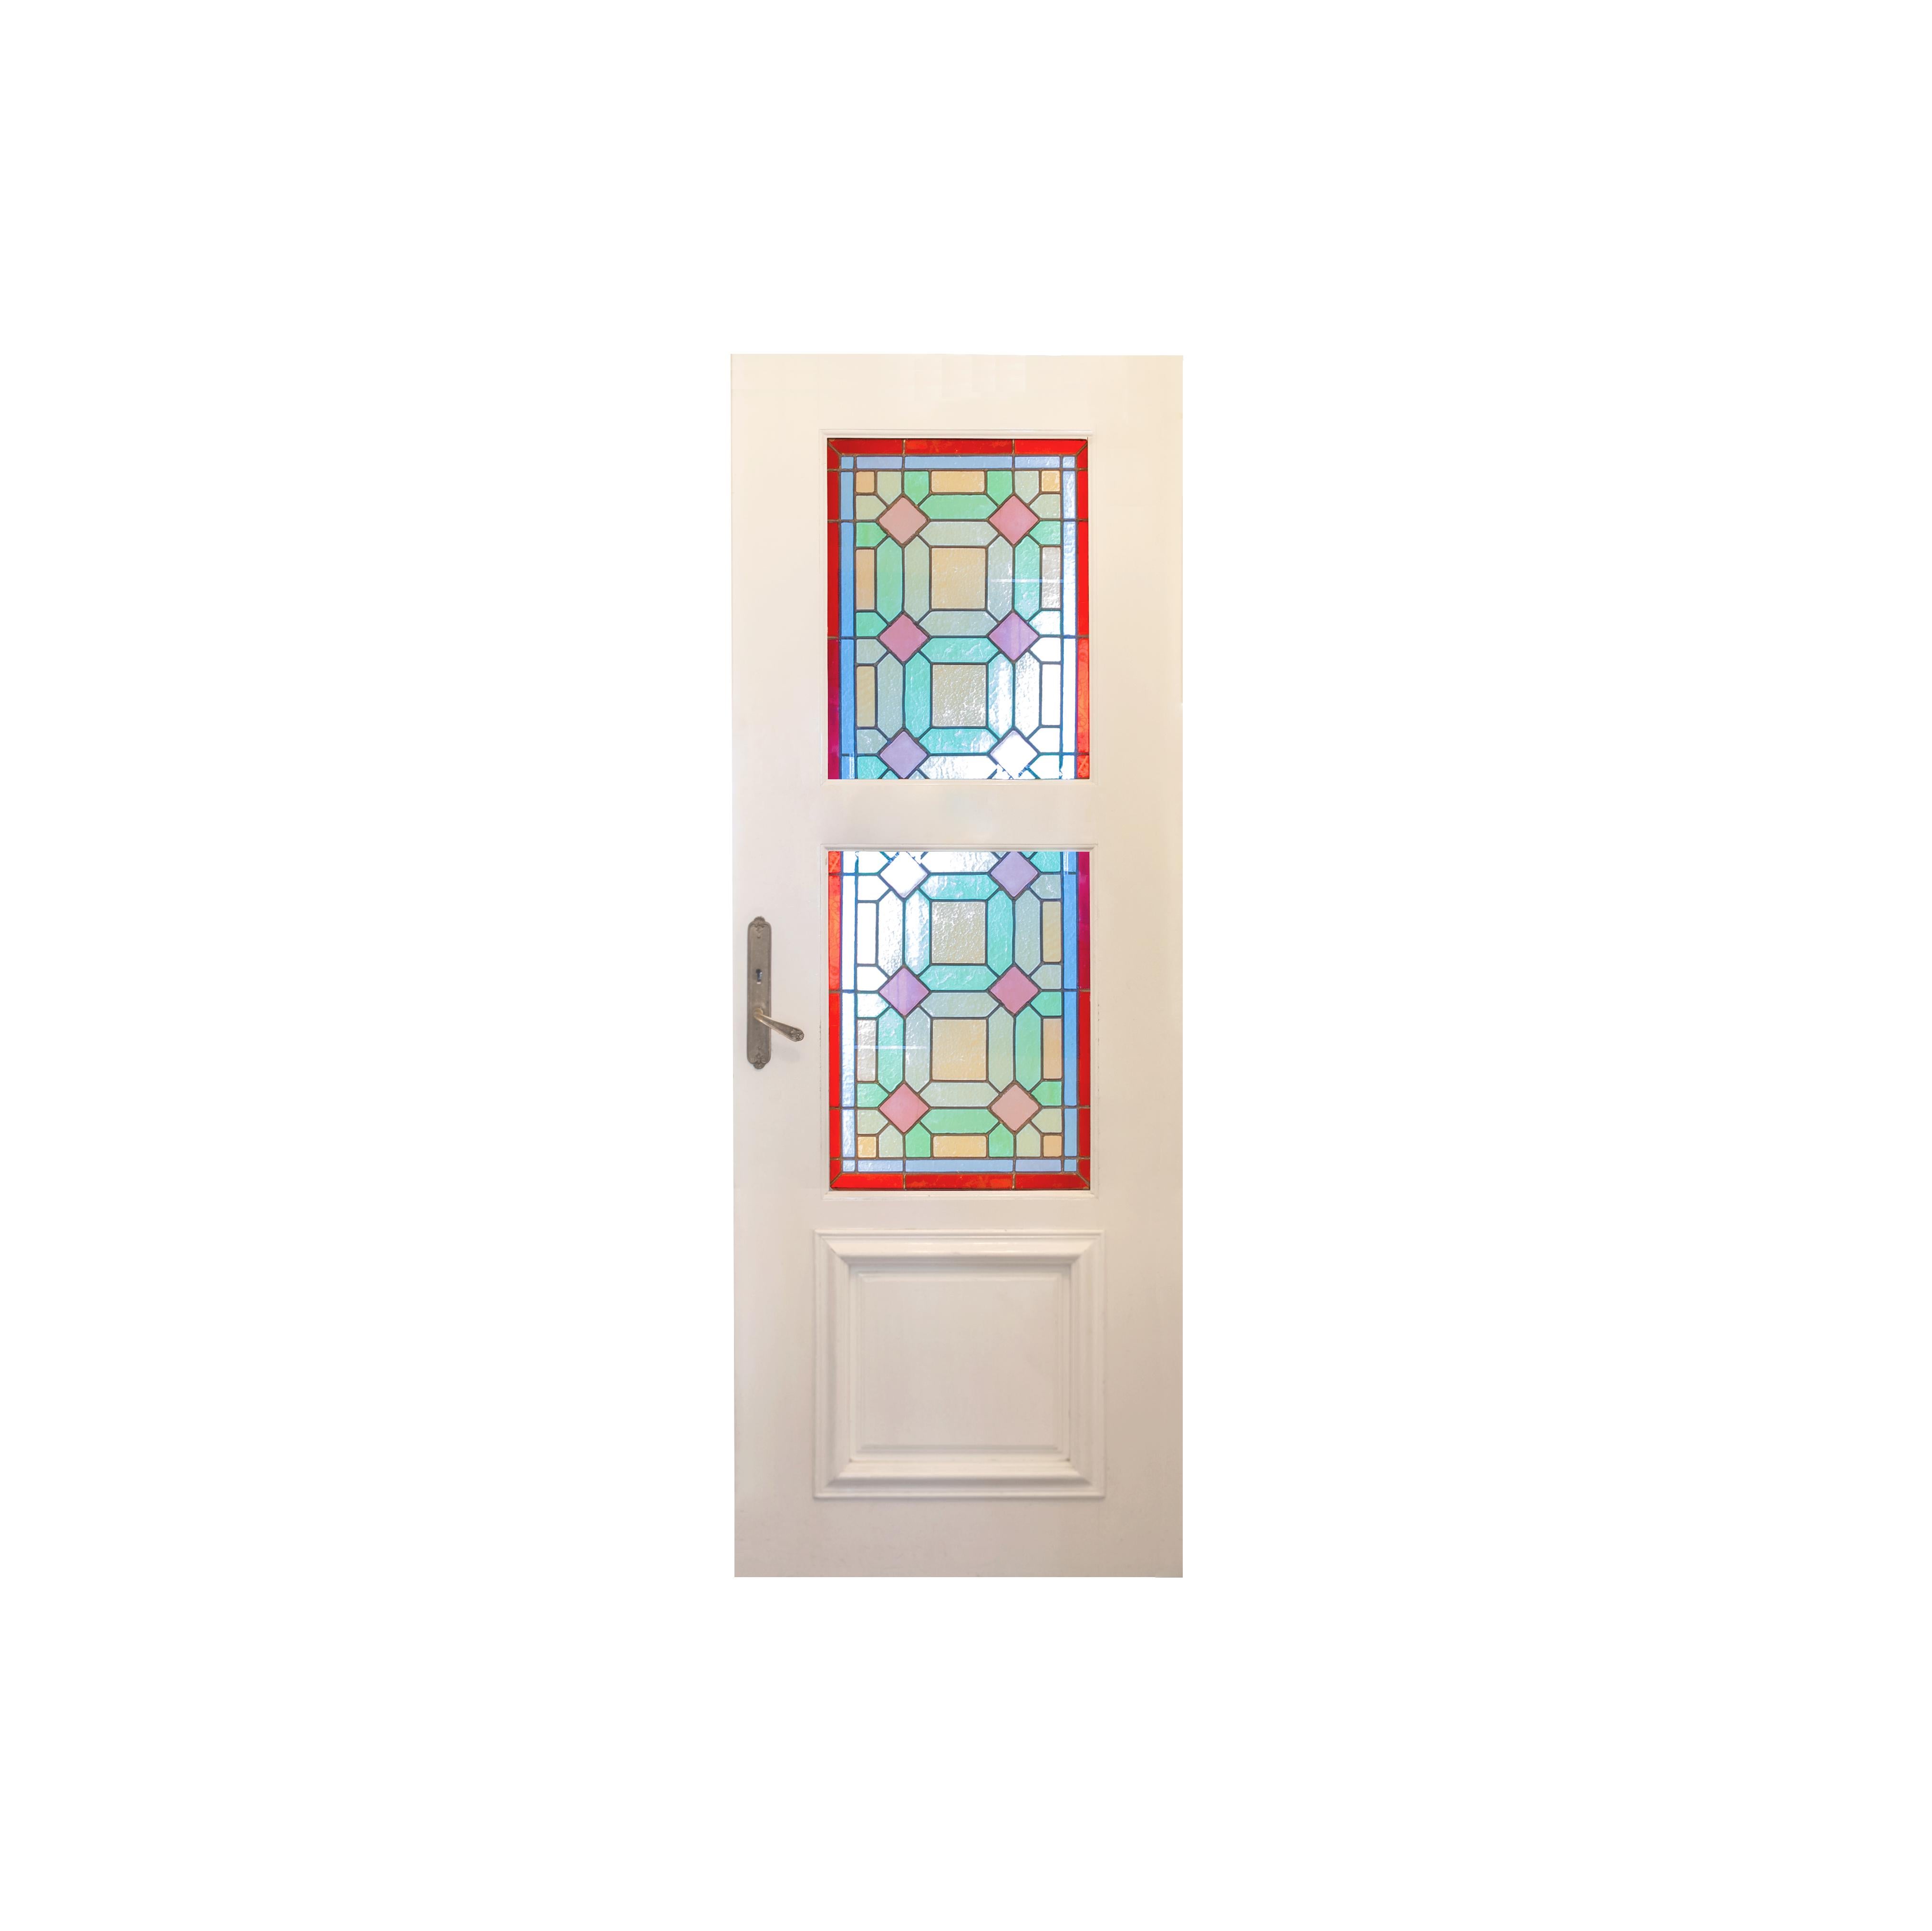 Satz von 10 Glasfenstern in fünf Türen mit Messinggriffen. 
Schöne Glasmalerei aus der Jugendstilzeit mit reicher polychromer Dekoration. Jede Tür hat zwei Glasscheiben, die von originalen Bleirinnen umrahmt sind.

Türen: 30,9 x 82,28 Zoll (78,5 x